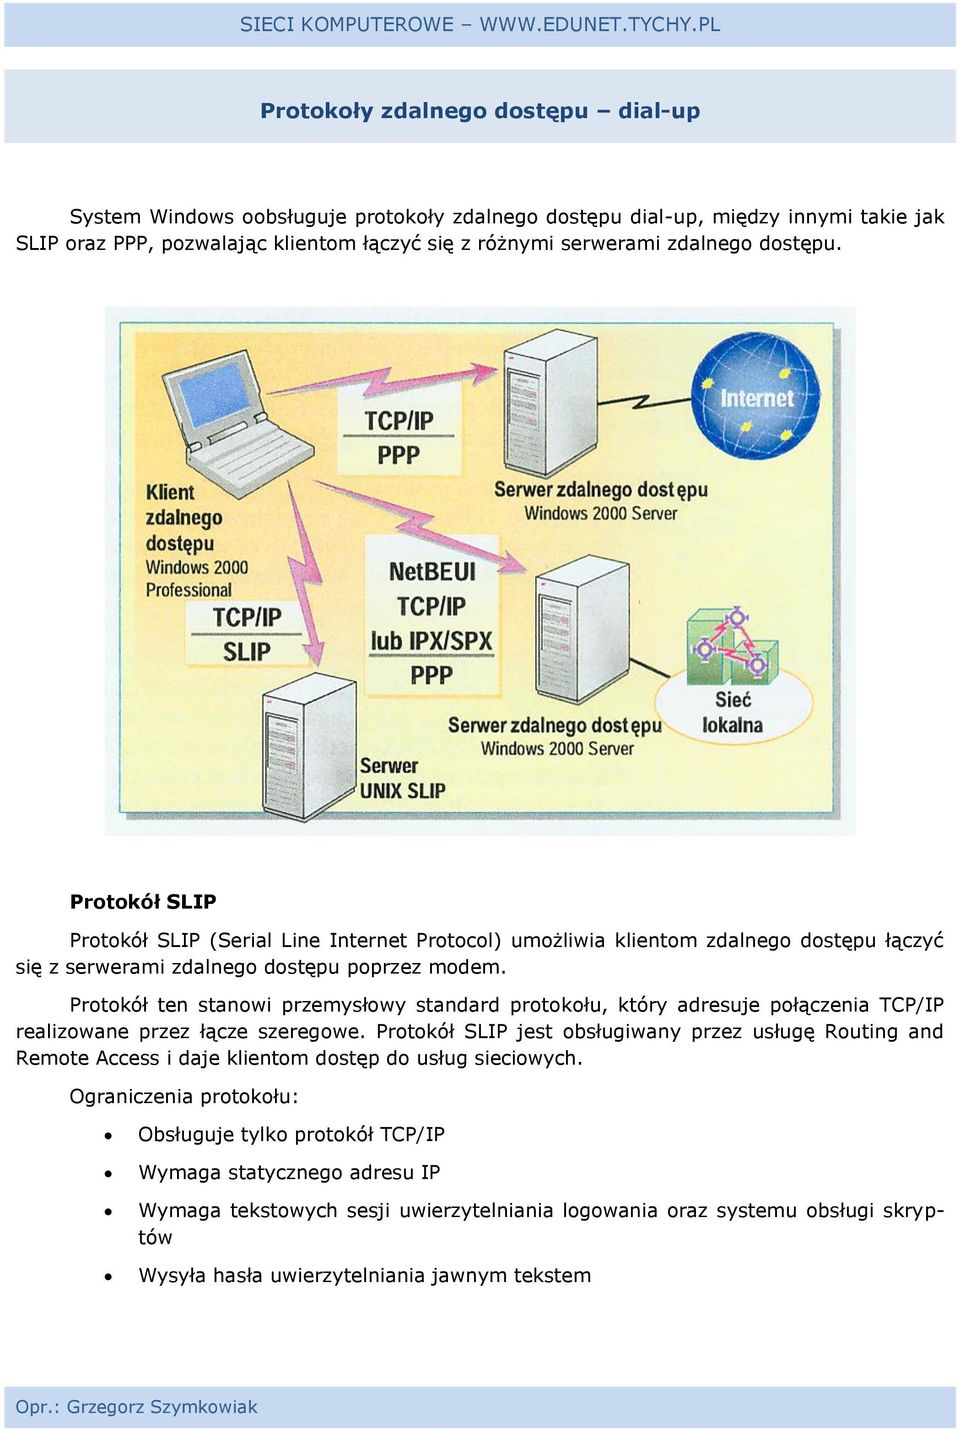 Protokół ten stanowi przemysłowy standard protokołu, który adresuje połączenia TCP/IP realizowane przez łącze szeregowe.